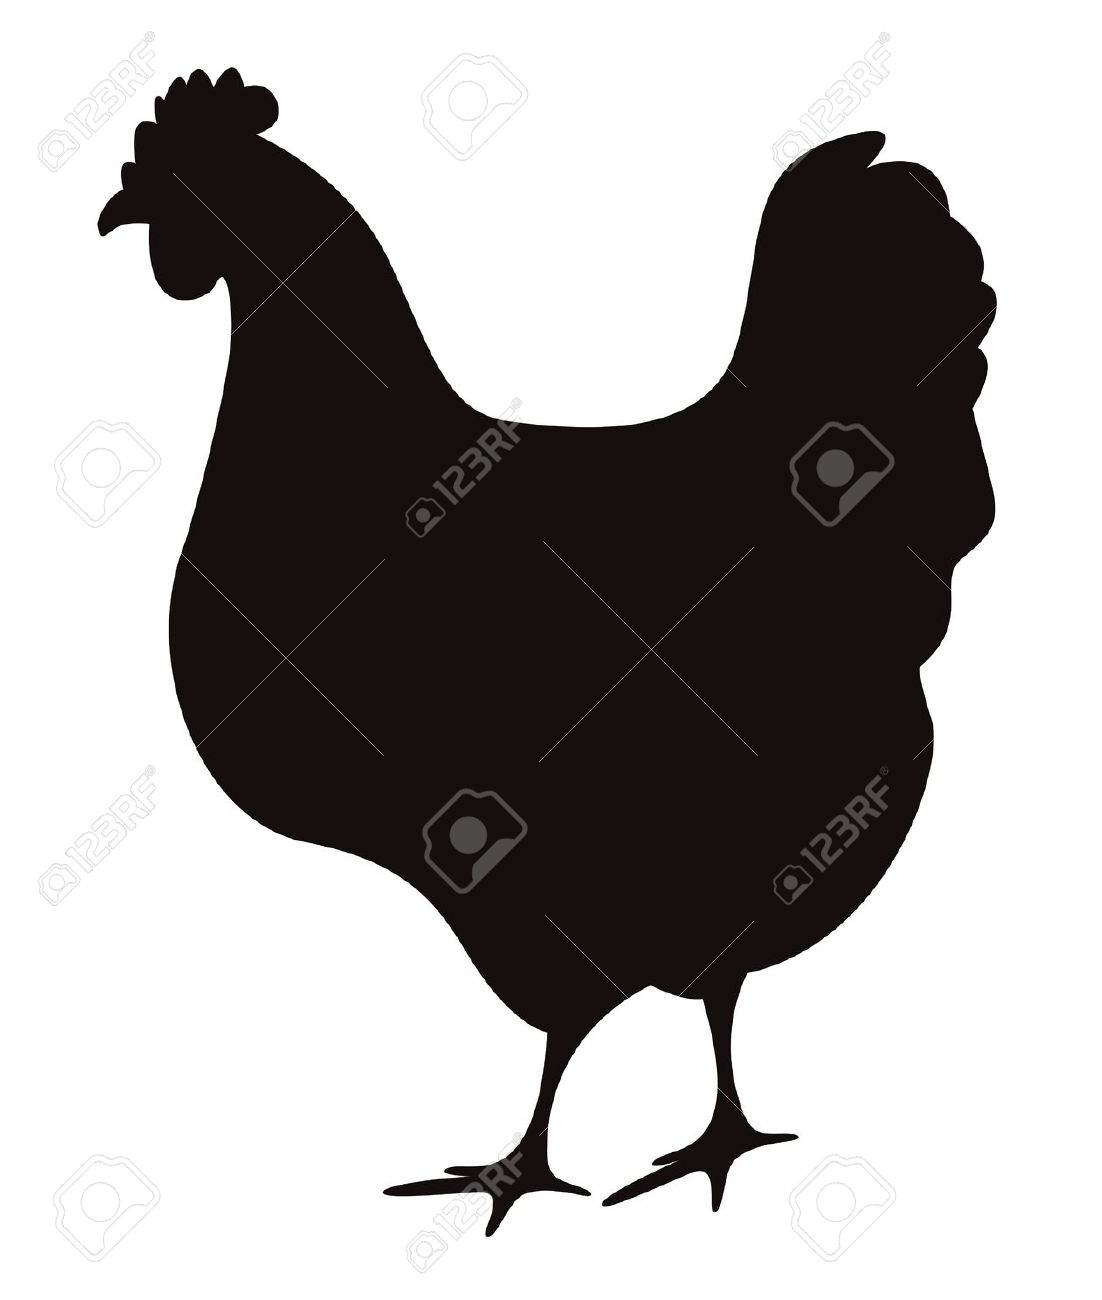 Chicken silhouette u0026middo